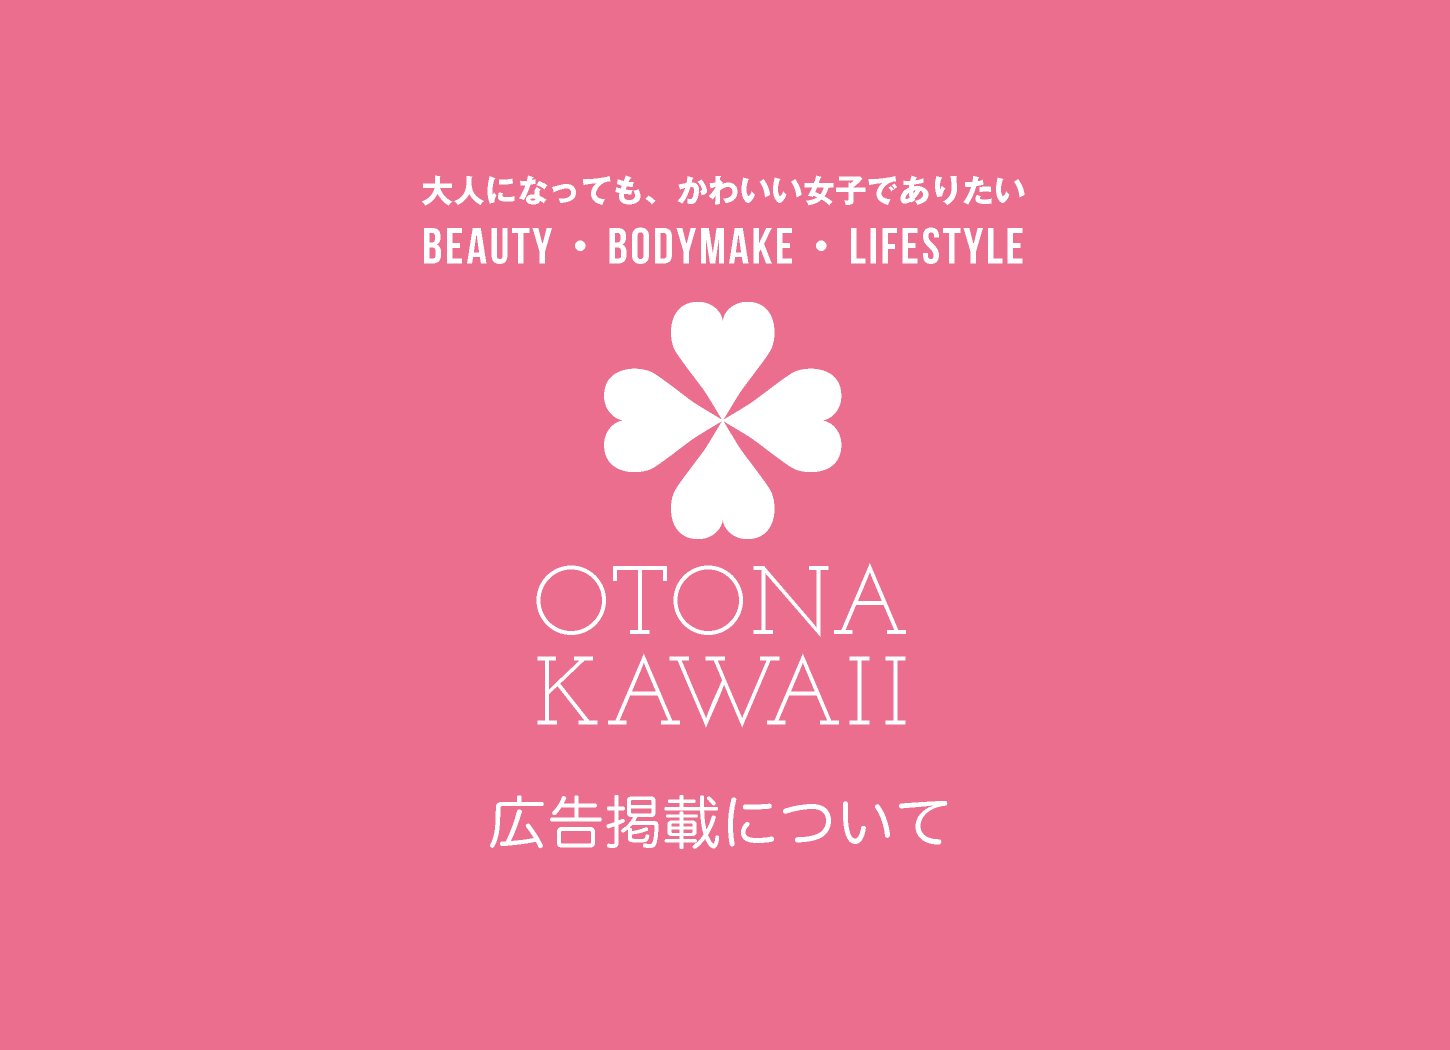 広告掲載について｜otona-kawaii.com｜大人になっても、かわいい女子でありたい｜Beauty・Bodymake・Lifestyle｜美容・健康・ライフスタイル